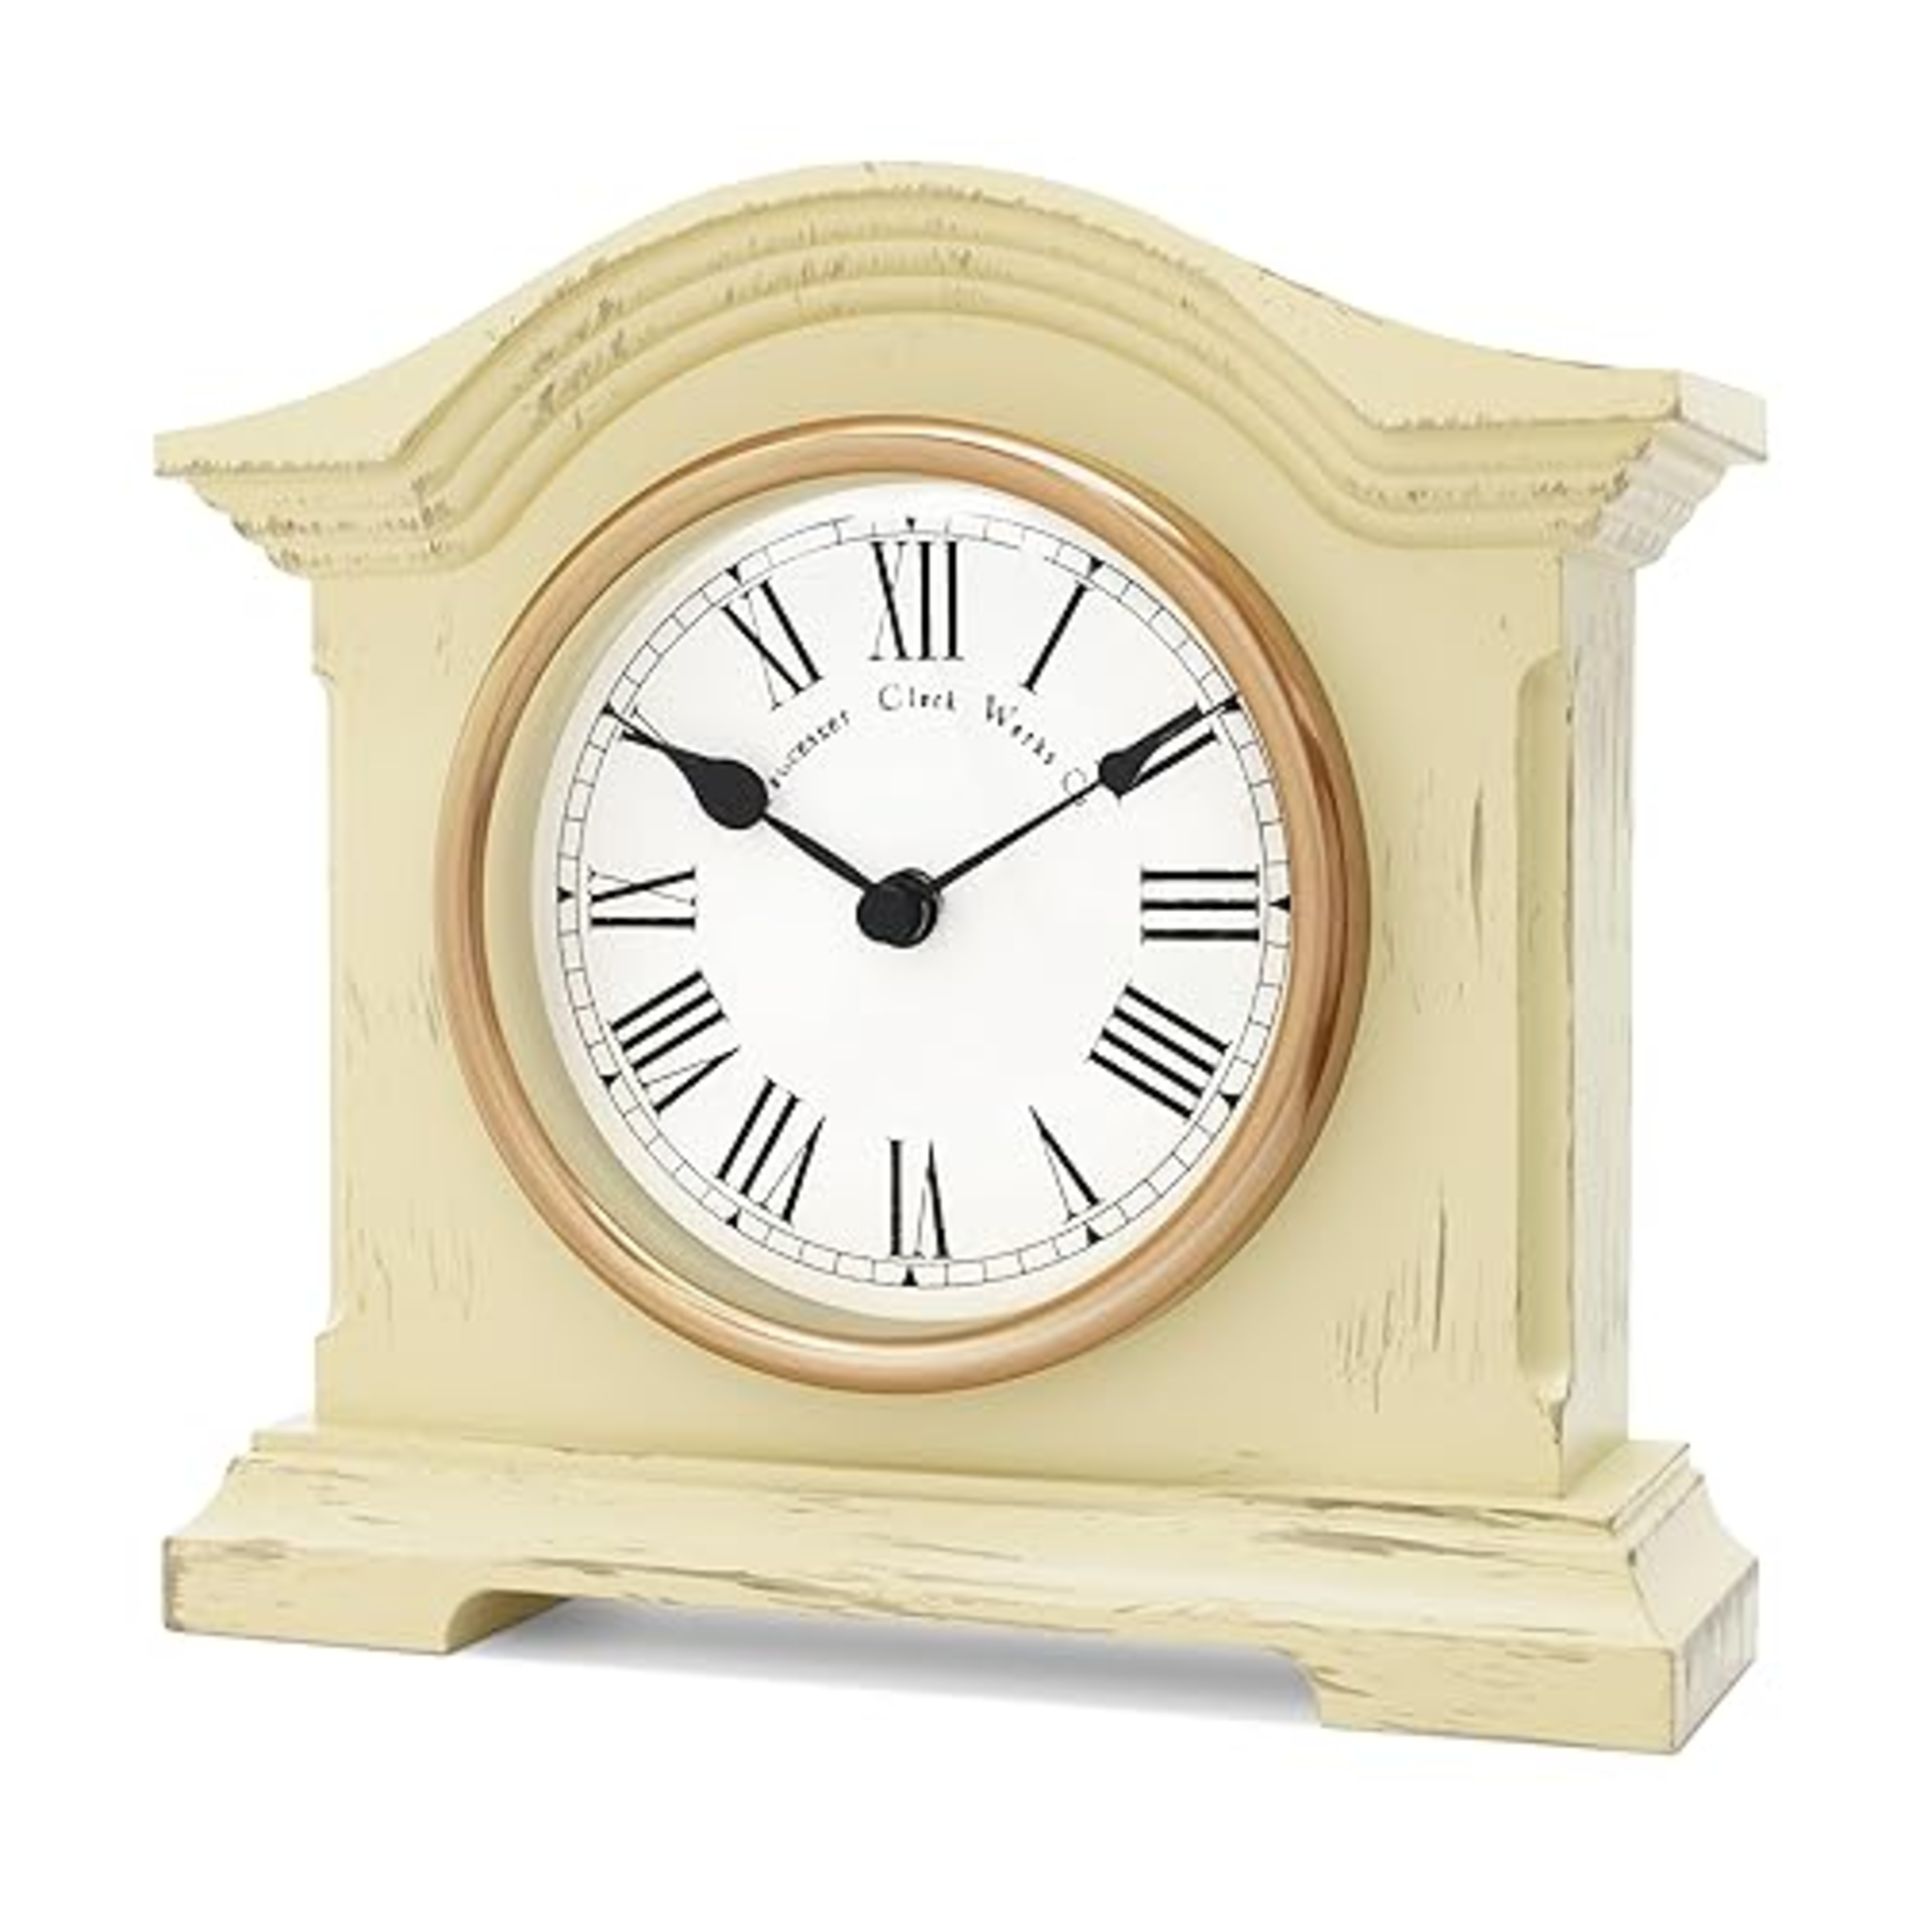 Acctim Falkenburg Distressed Mantel Clock Quartz Cream